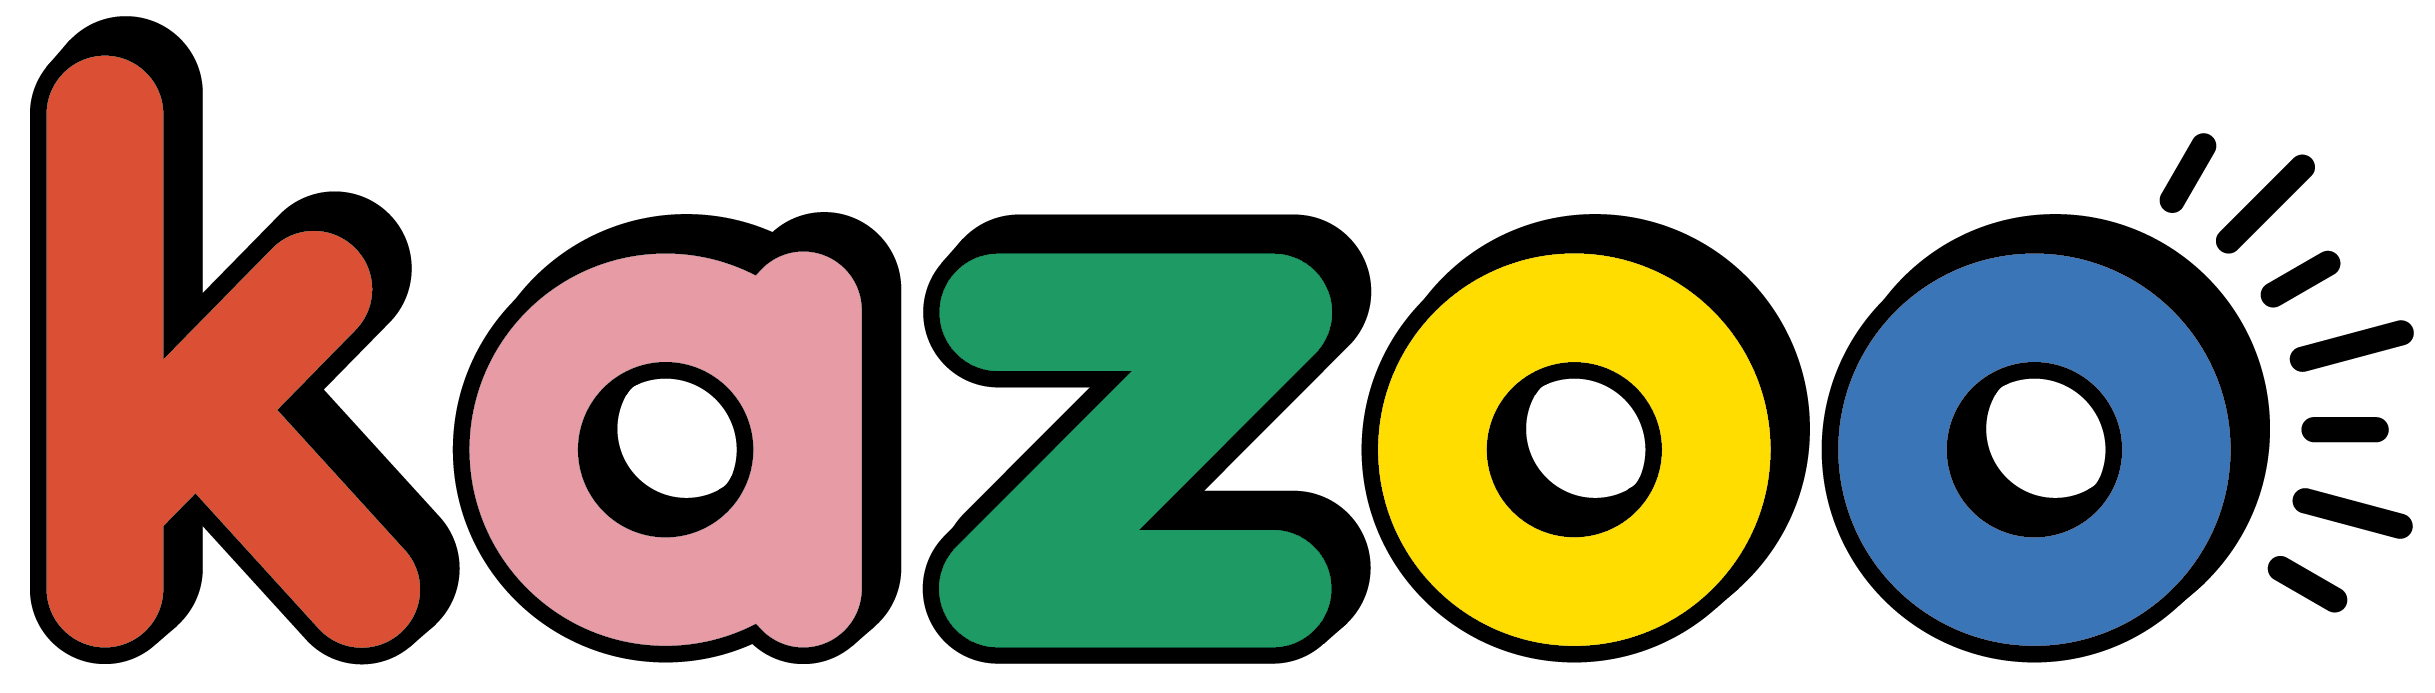 Le kazoo - L'influx